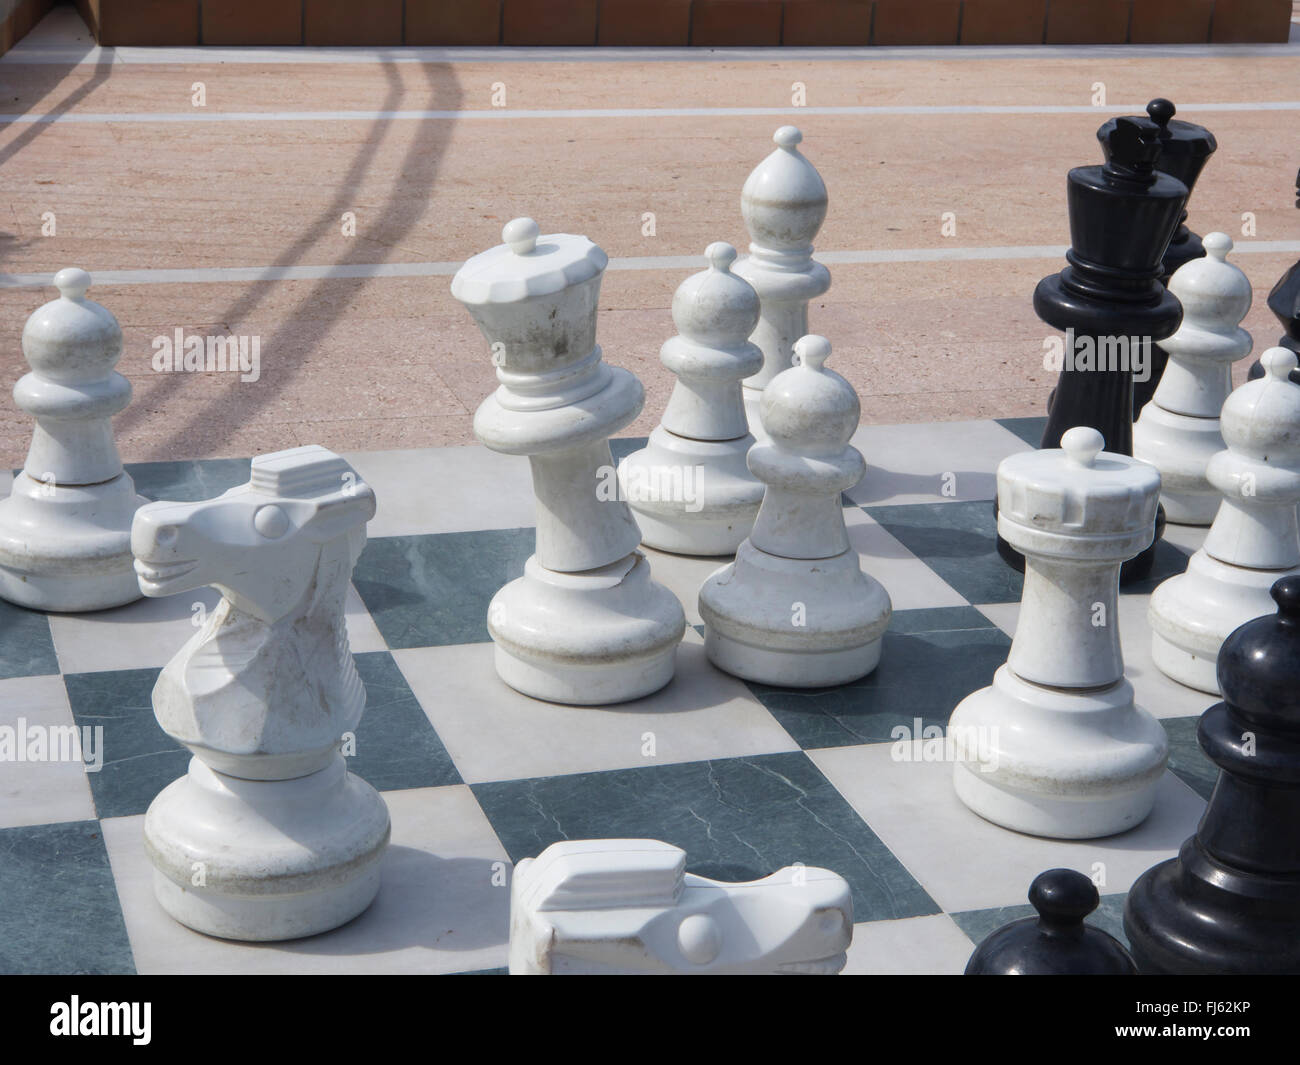 Morceaux et conseil d'un jeu d'échecs géant en plein air, activité de loisirs pour les touristes dans un hôtel à Tenerife , Canaries Espagne Banque D'Images